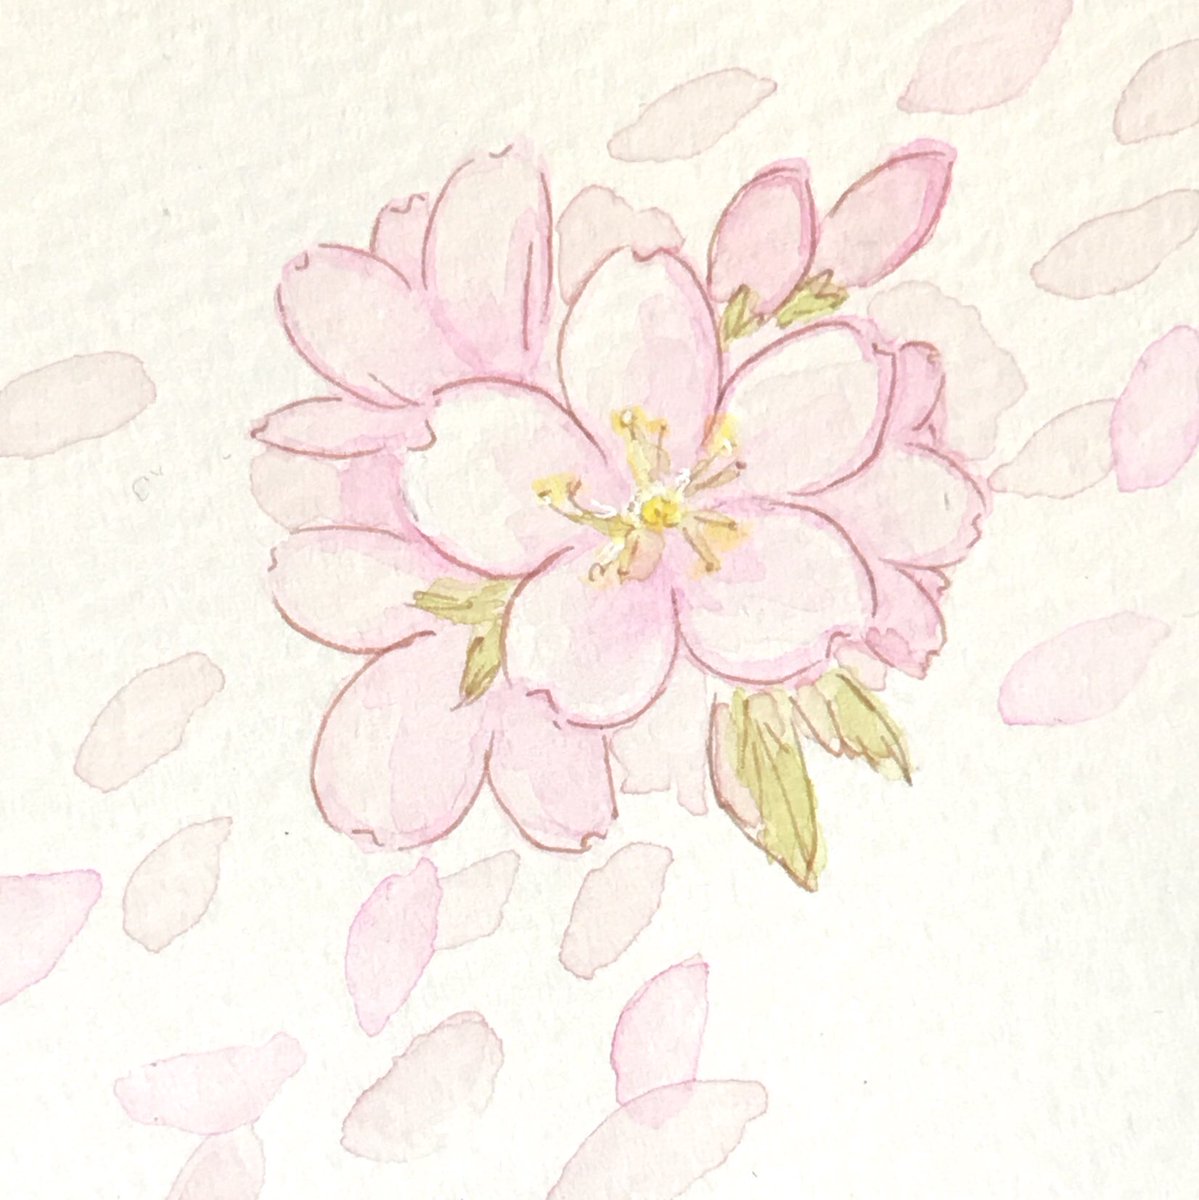 和土 遼 もみじさん Yoshirou 93 主催の 舞い散る桜展 に参加させていただいた絵まとめ 4枚目は 年前の過去絵で申し訳ない気持ち 過去絵と現在絵を比較してみようキャンペーン 昔と比べたら少しは桜らしくなったかな 大好きな花なので